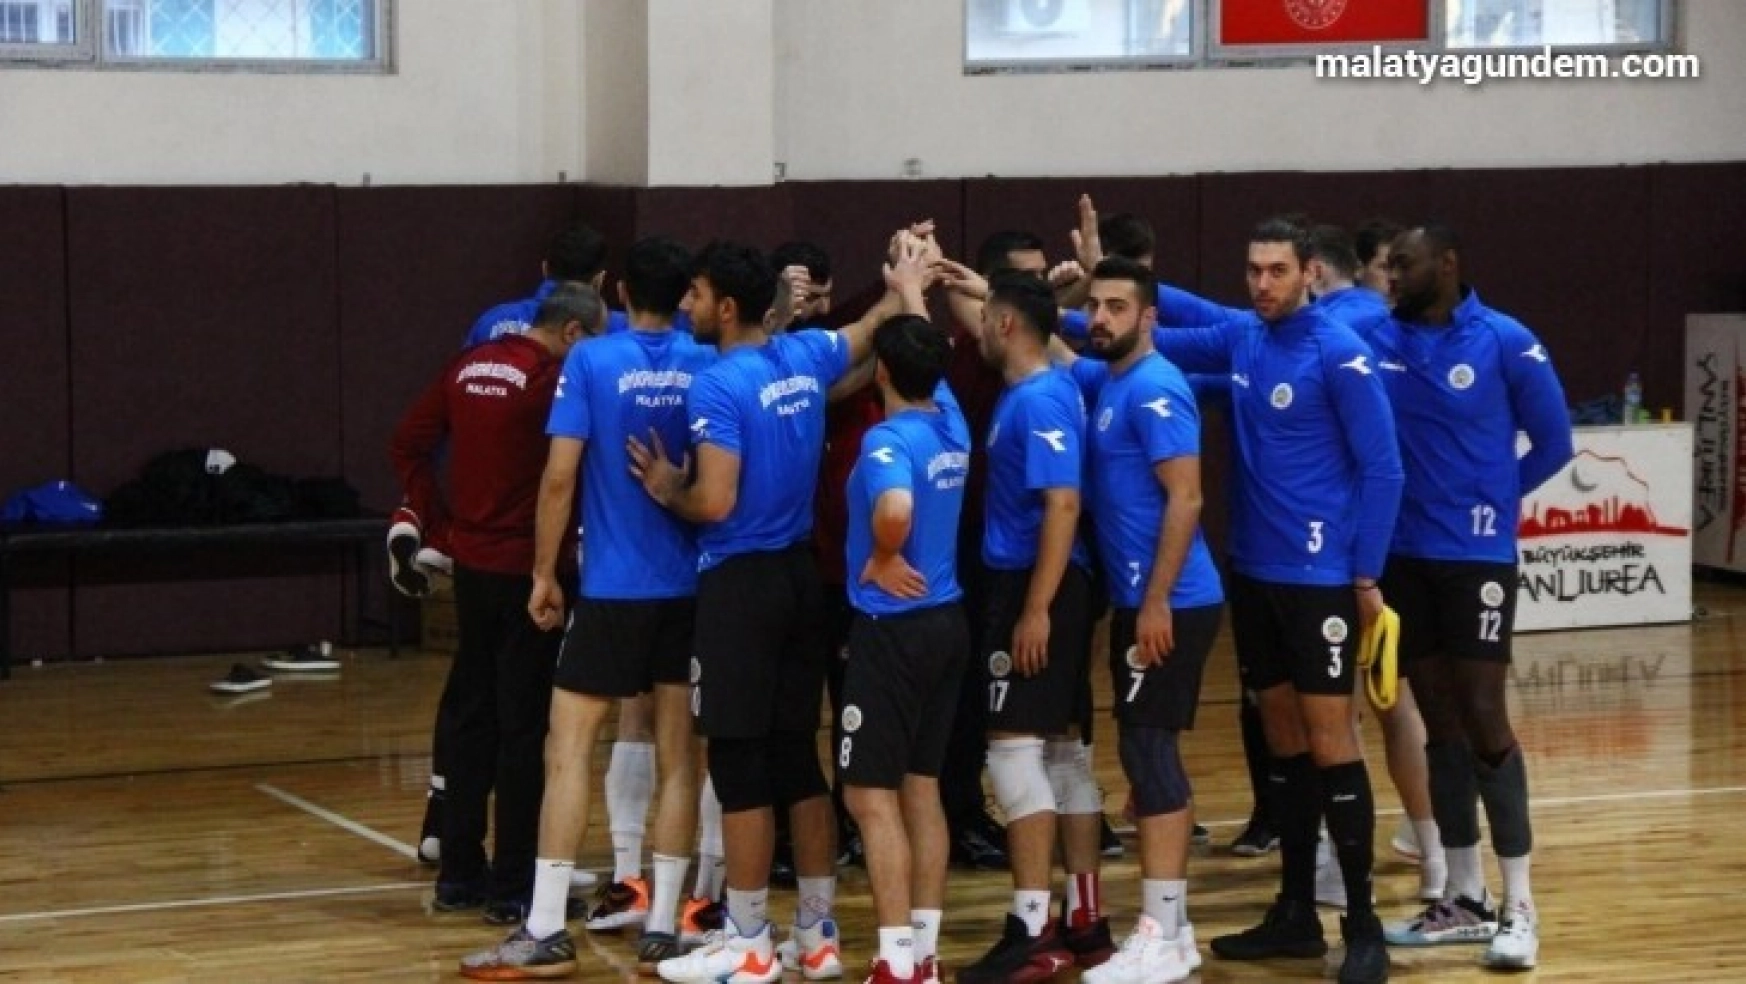 Malatya Büyükşehir Belediyespor veleybolda mağlup oldu